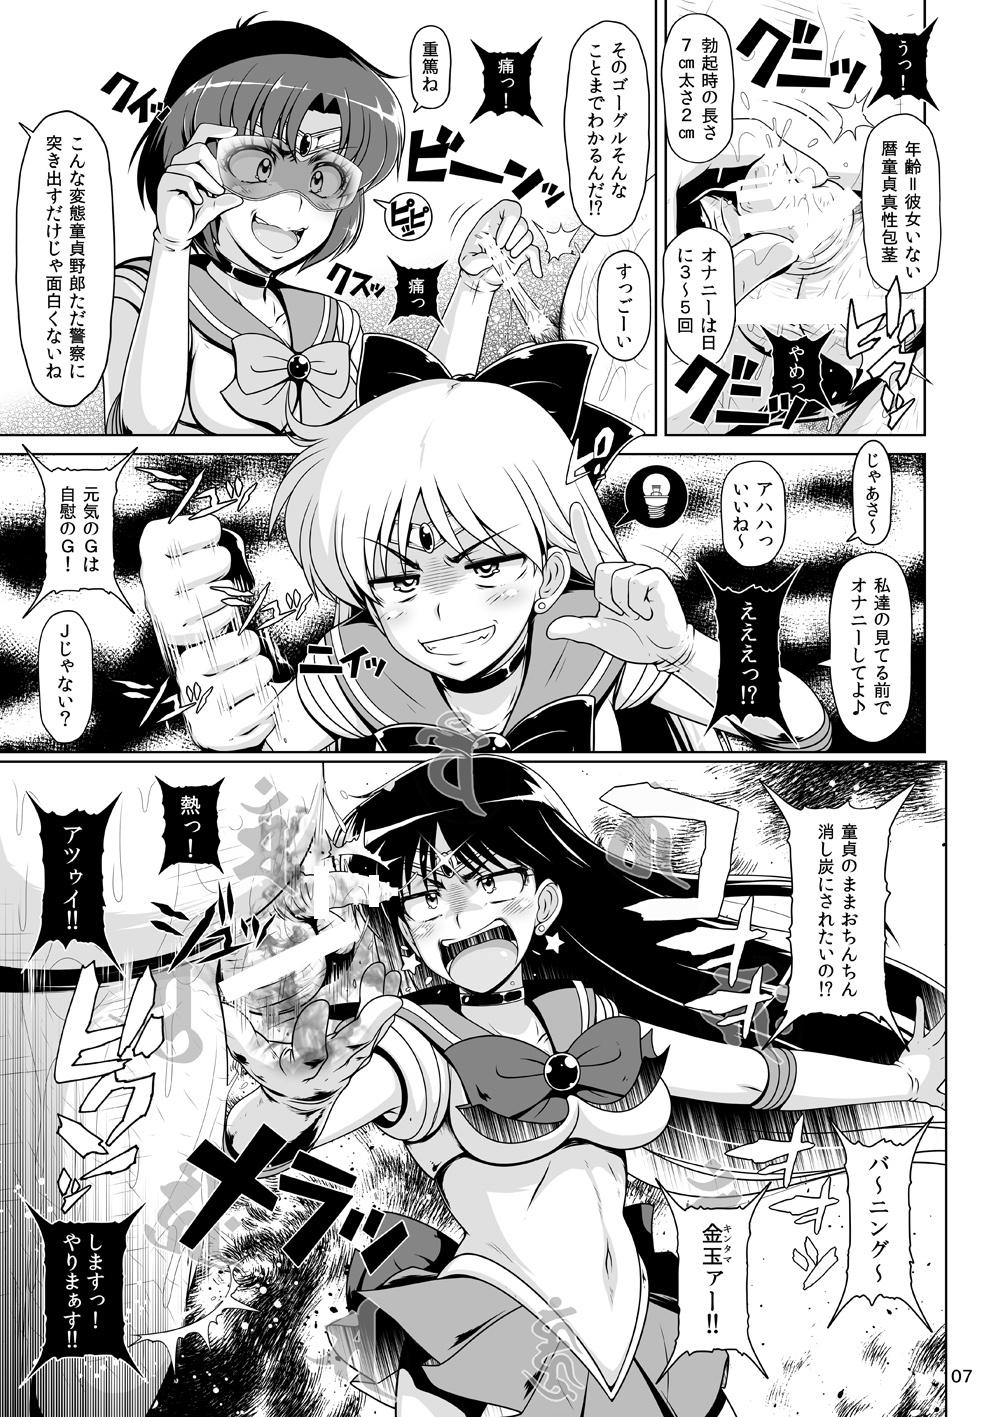 Chaturbate Suisei Bakuhatsu - Sailor moon Real Orgasm - Page 6